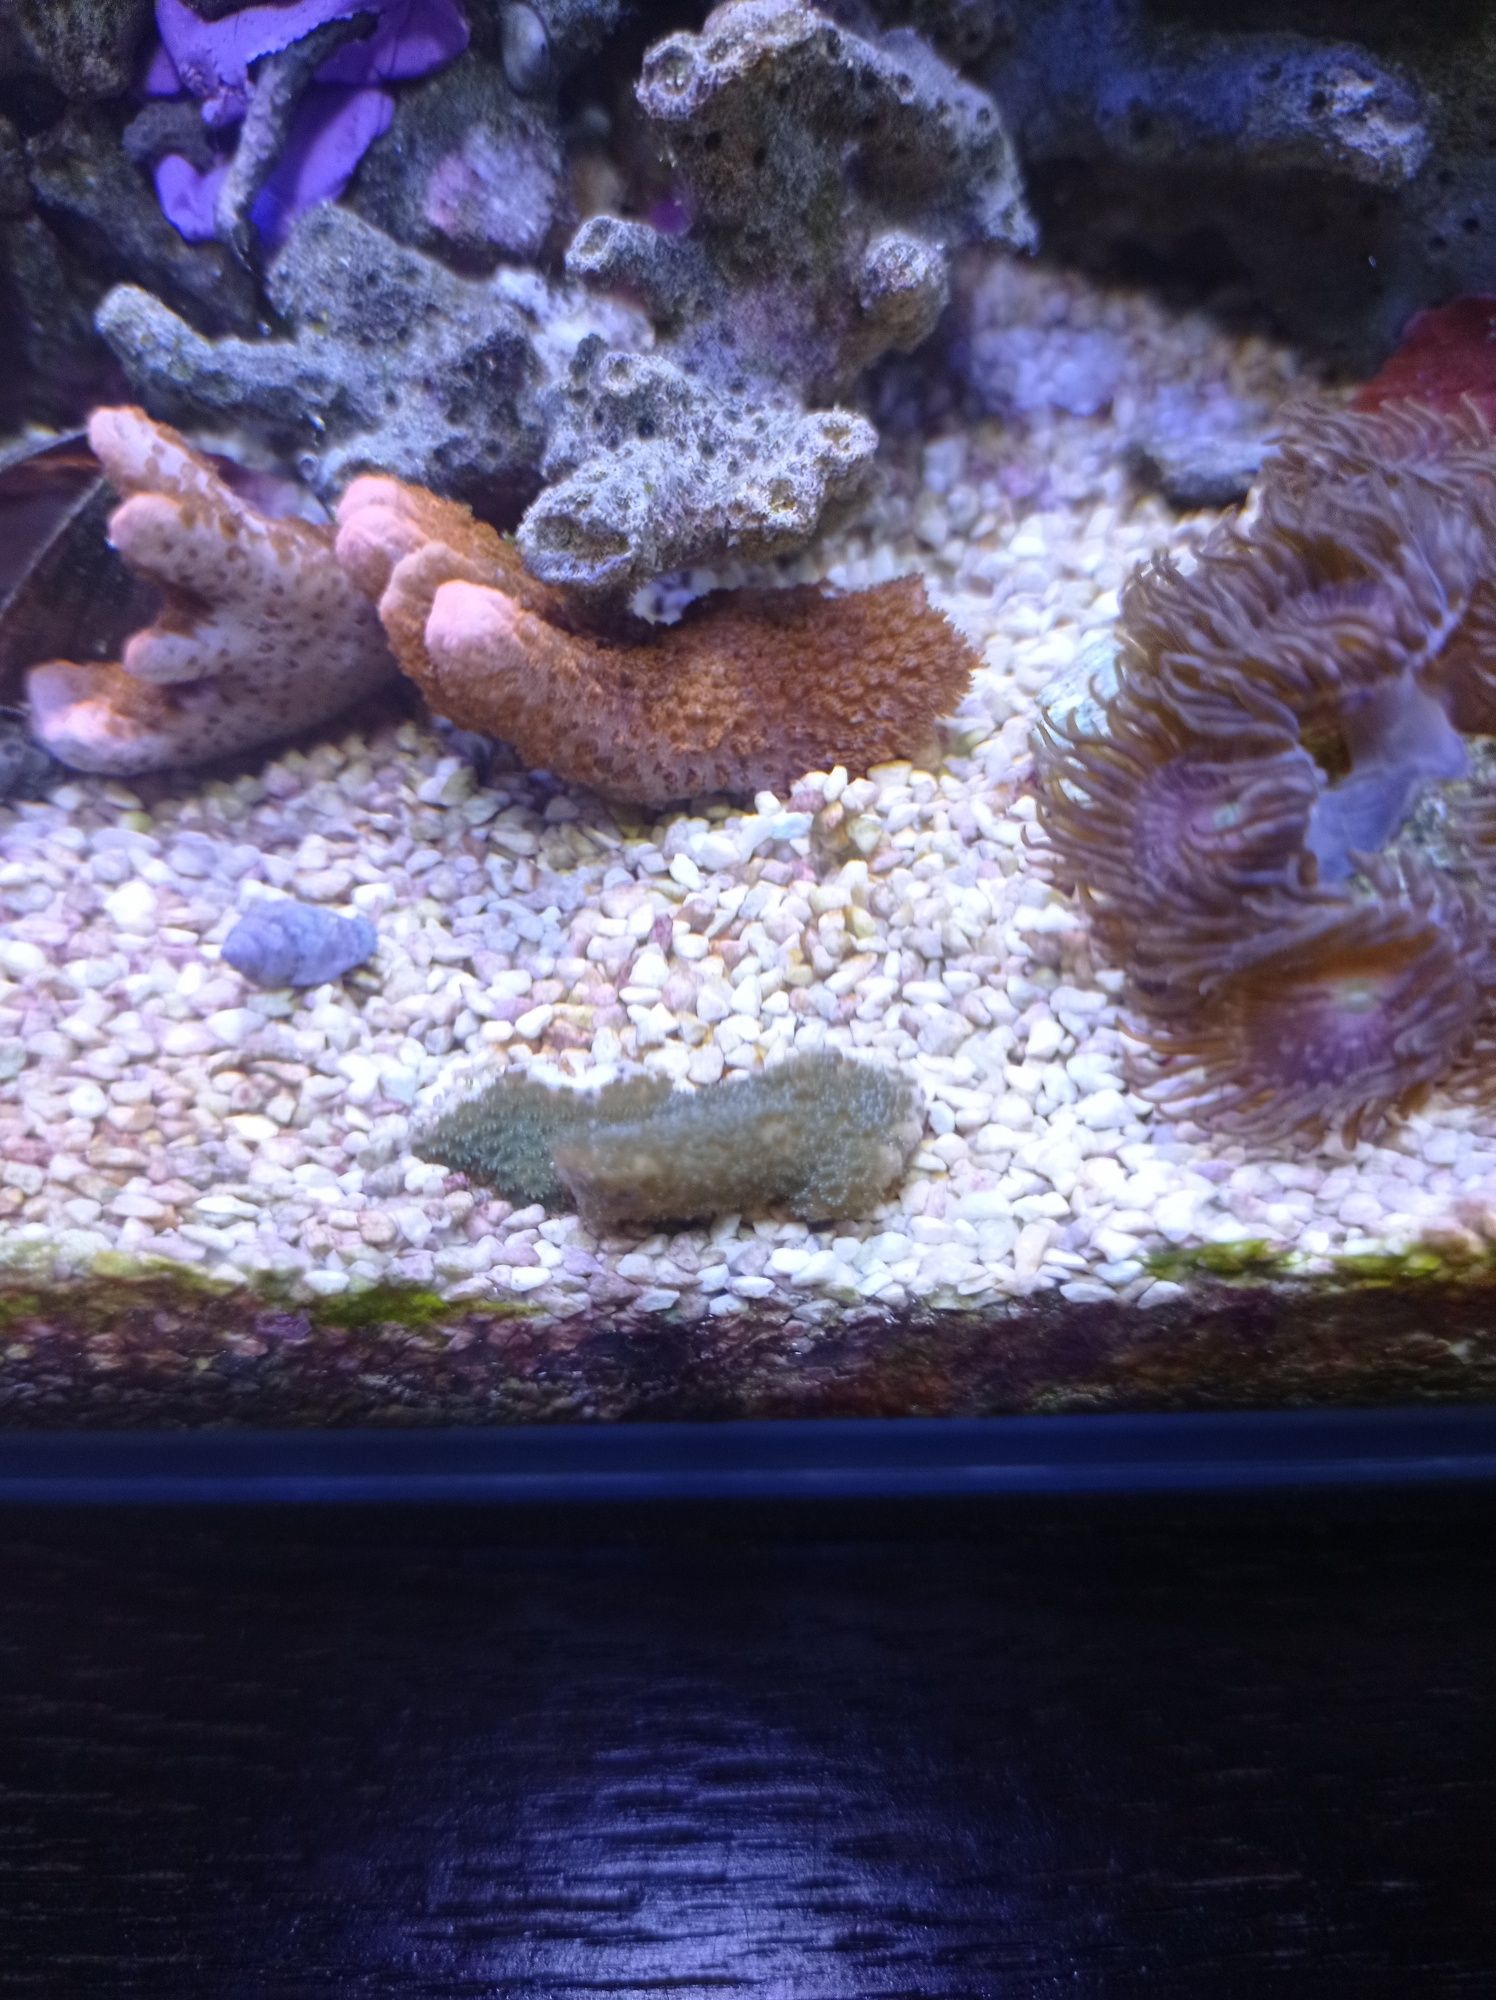 Montipora czerwona fluo FLUO, koralowiec miękki, akwarium morskie.